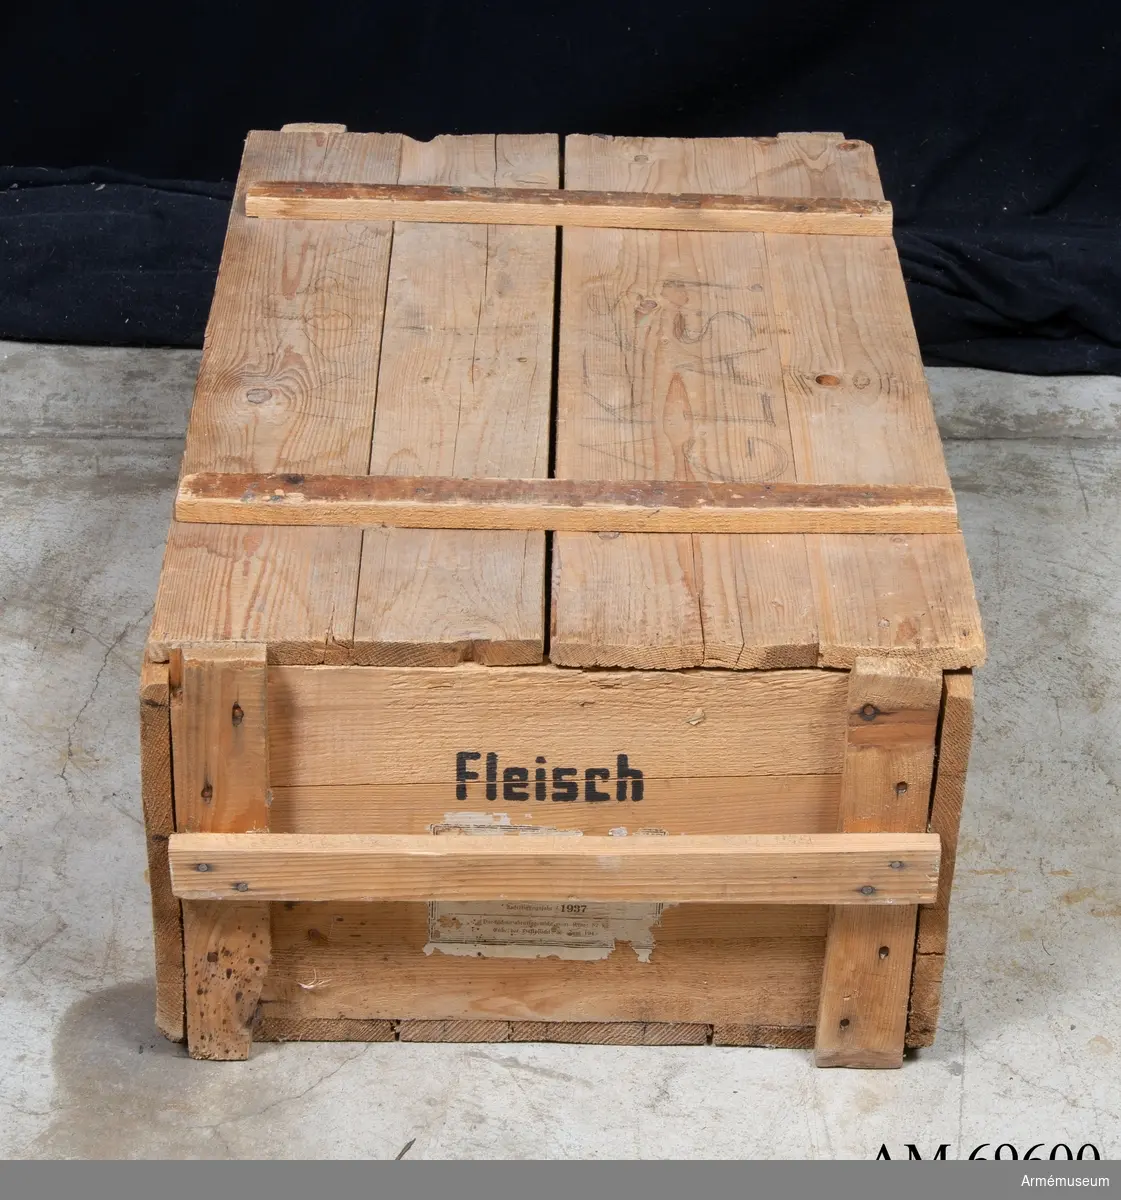 Låda av trä märkt med texten "Fleisch" i svart samt etiketter med tyskt text och årtalet 1937. I lådans botten finns spår av runda ringar.